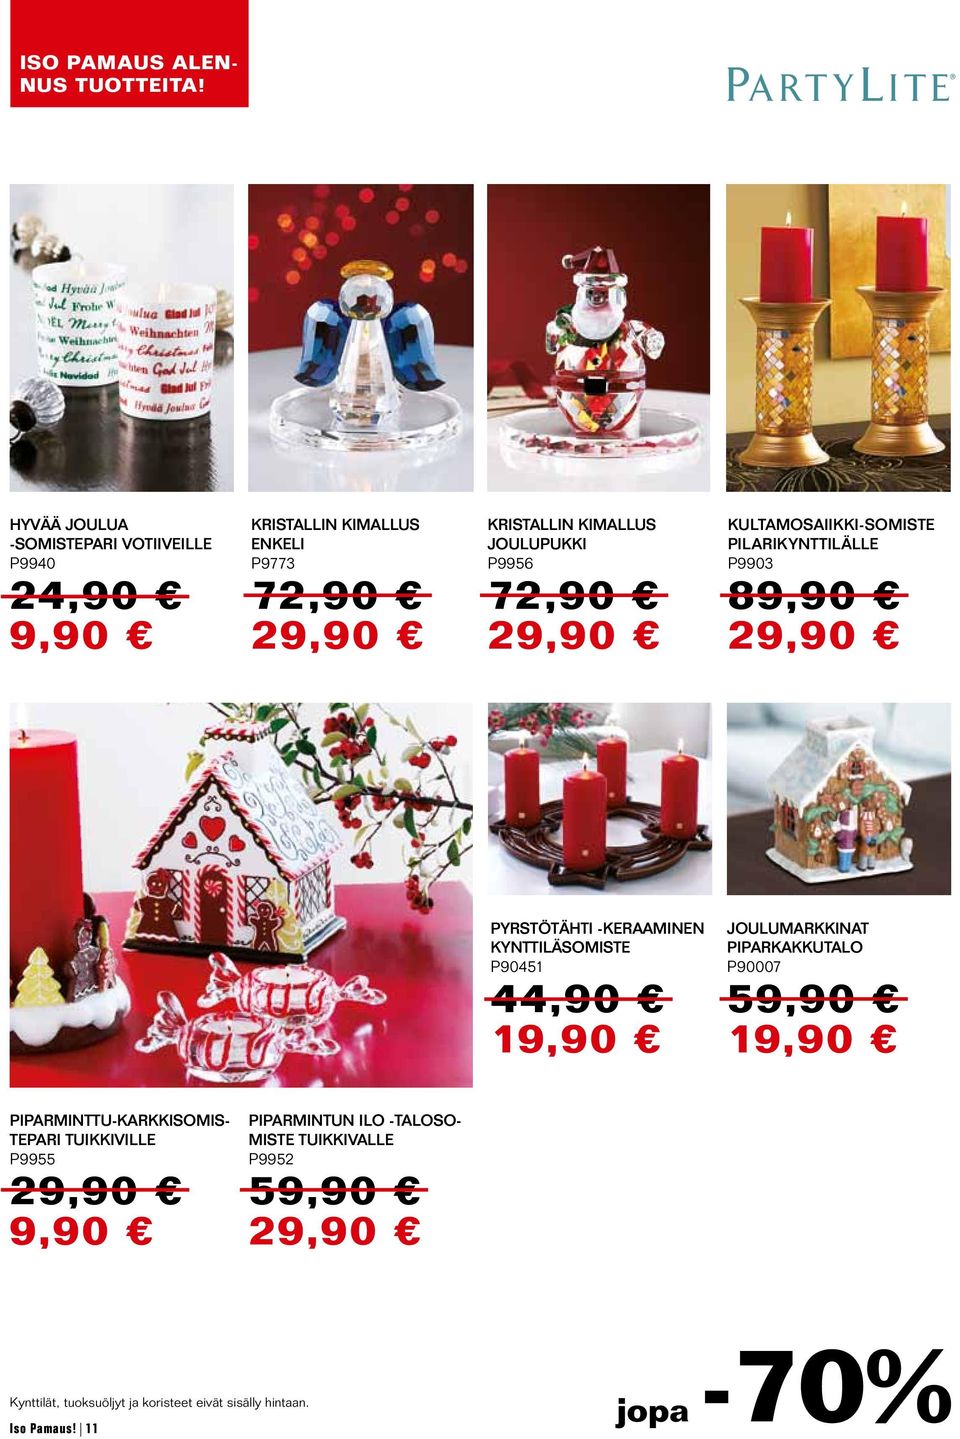 -keraaminen kynttiläsomiste P90451 4 1 Joulumarkkinat Piparkakkutalo P90007 5 1